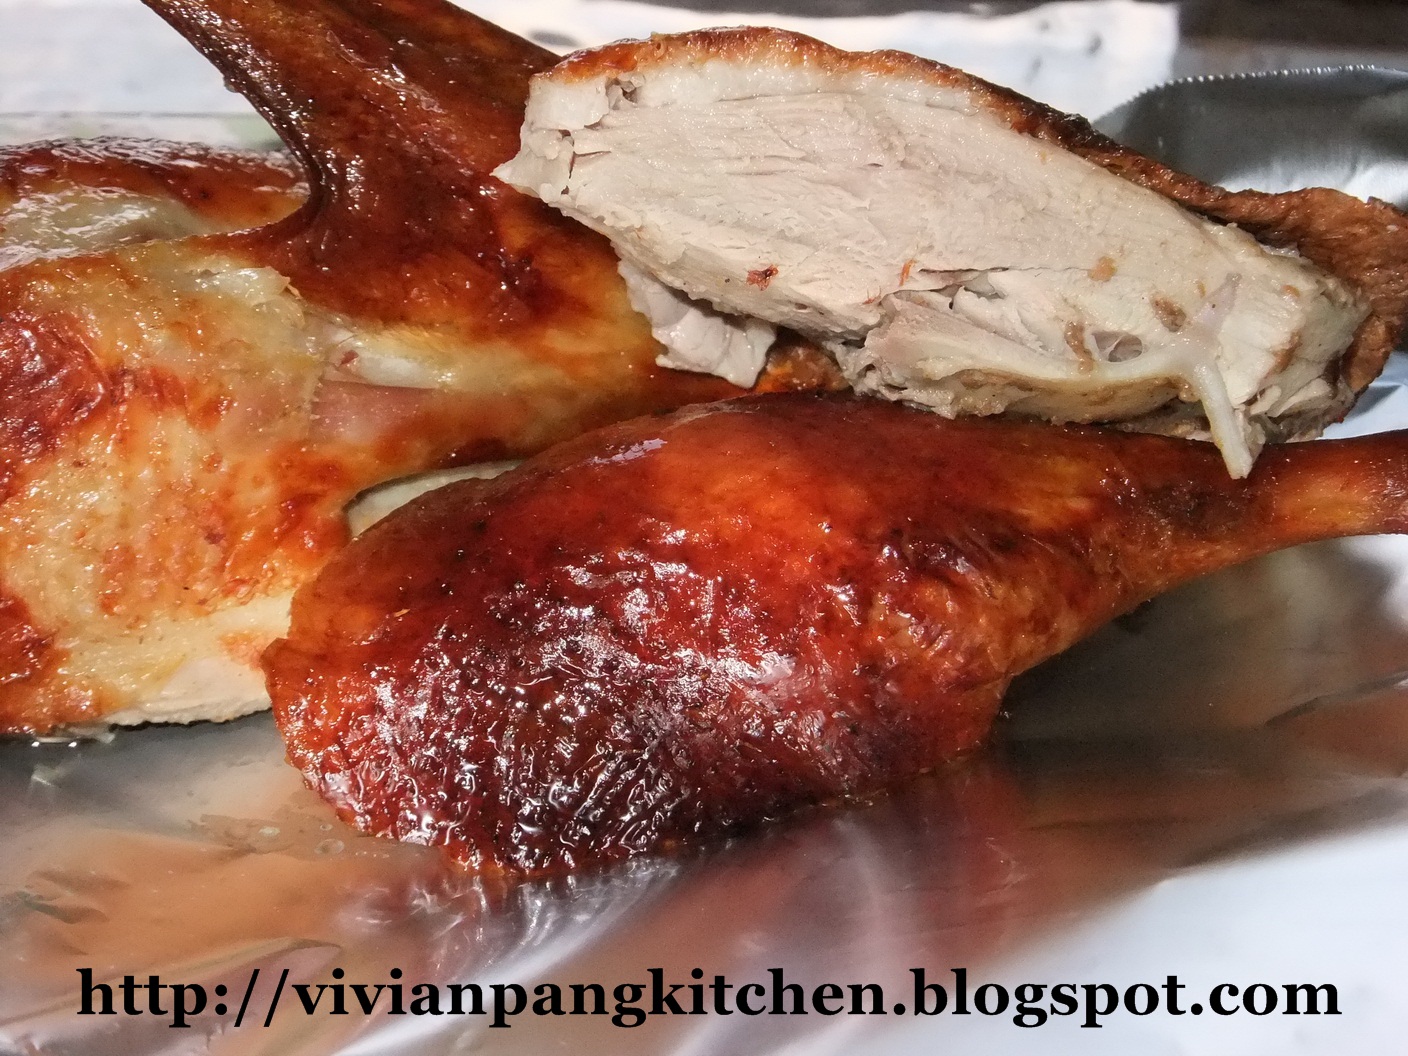 Vivian Pang Kitchen: Crispy Skin Roasted Duck